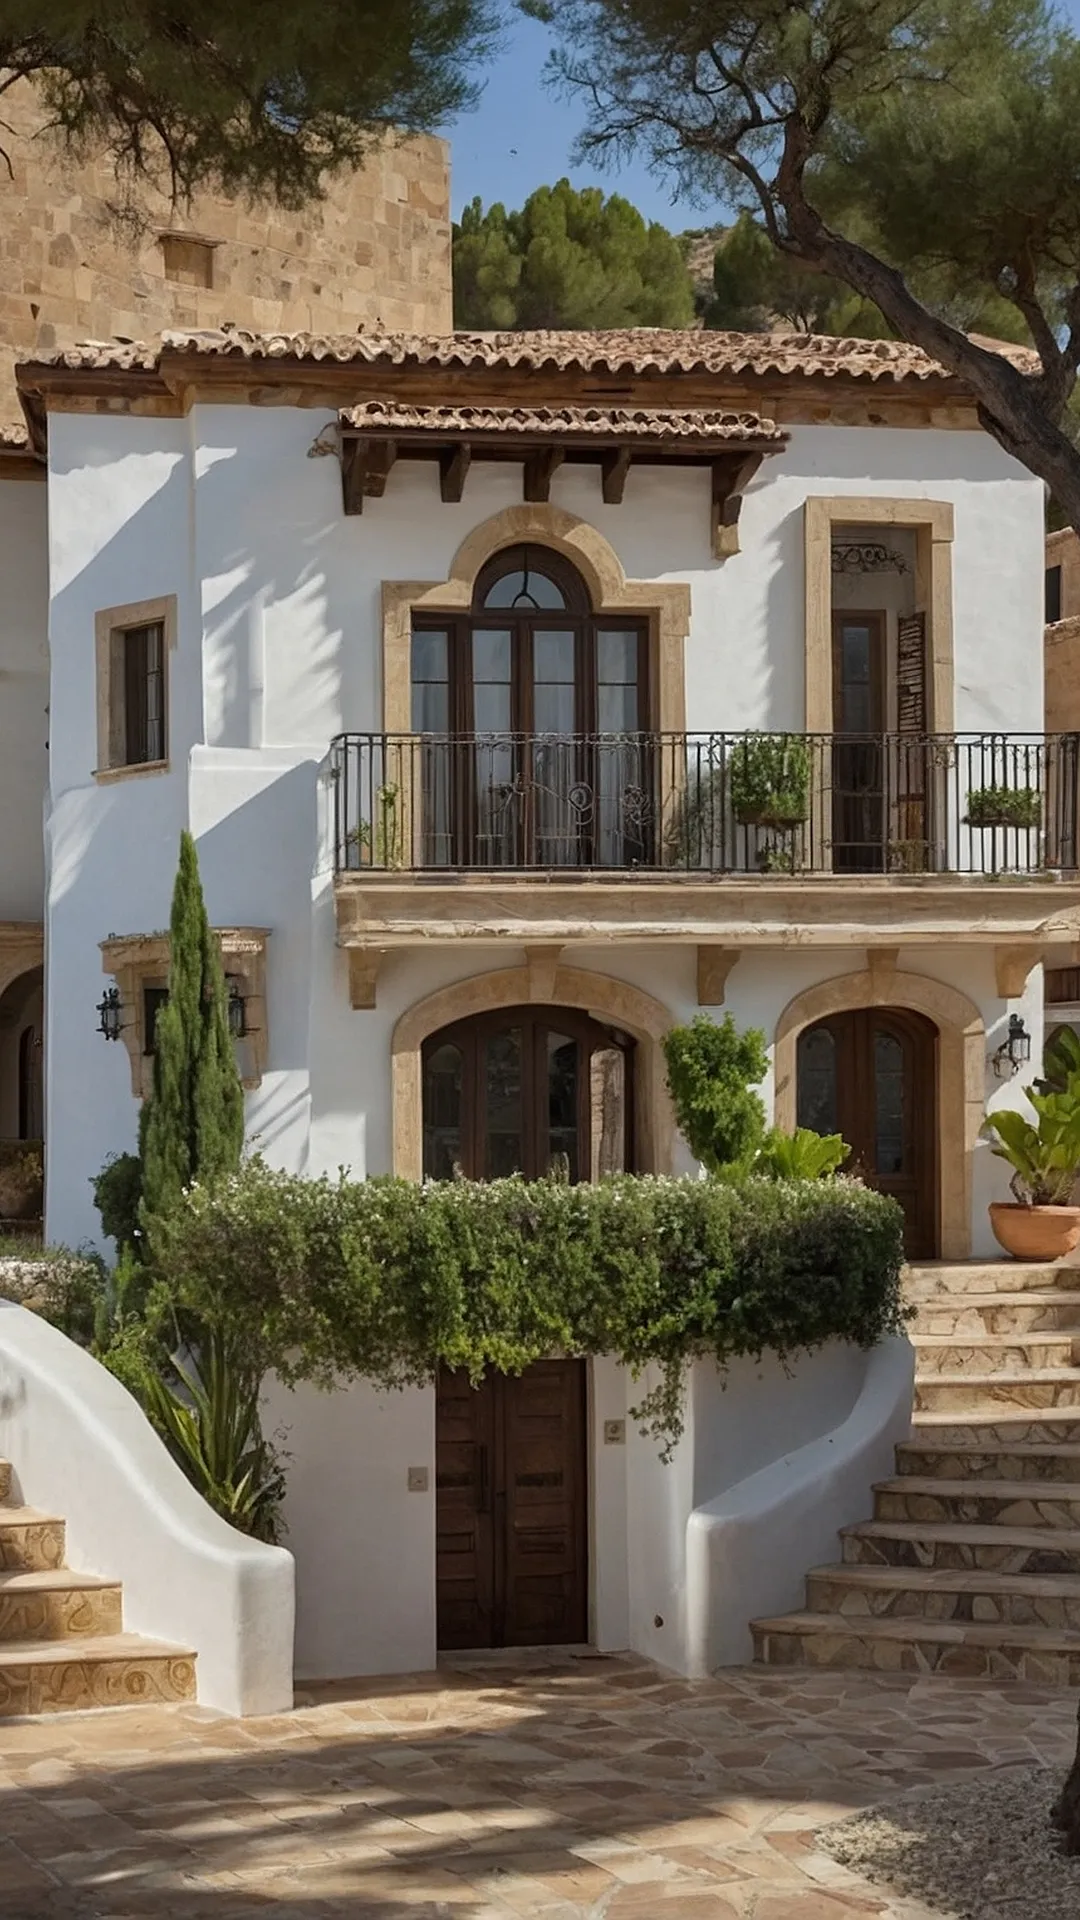 Eternal Elegance: Mediterranean Home Architecture Showcase